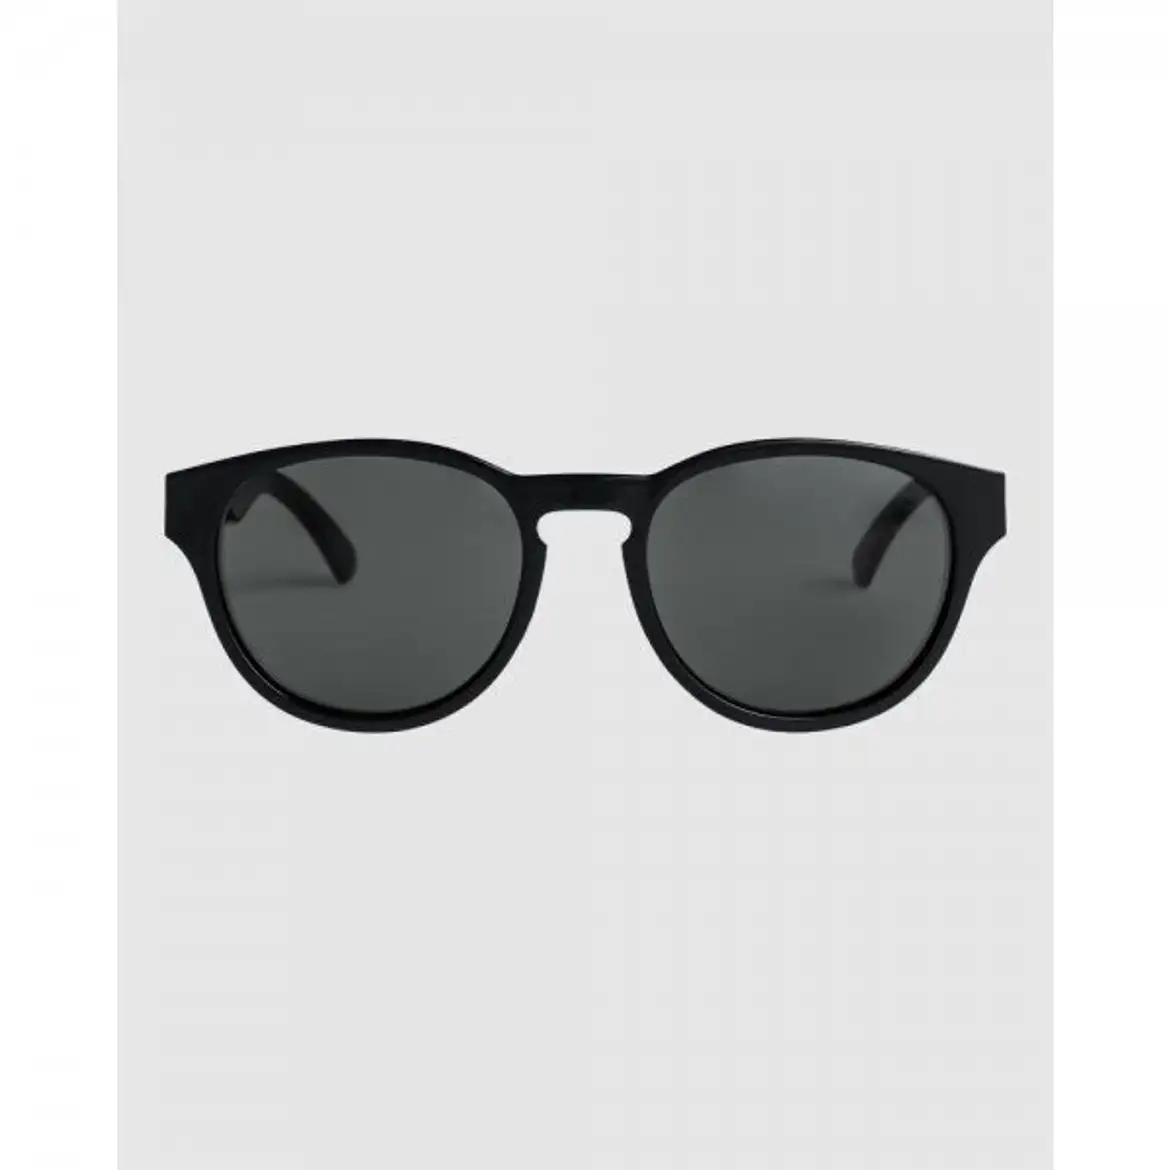 퀵실버-3889582 Quiksilver Eliminator Sunglasses For Men - BLACK/GREY | 트렌비